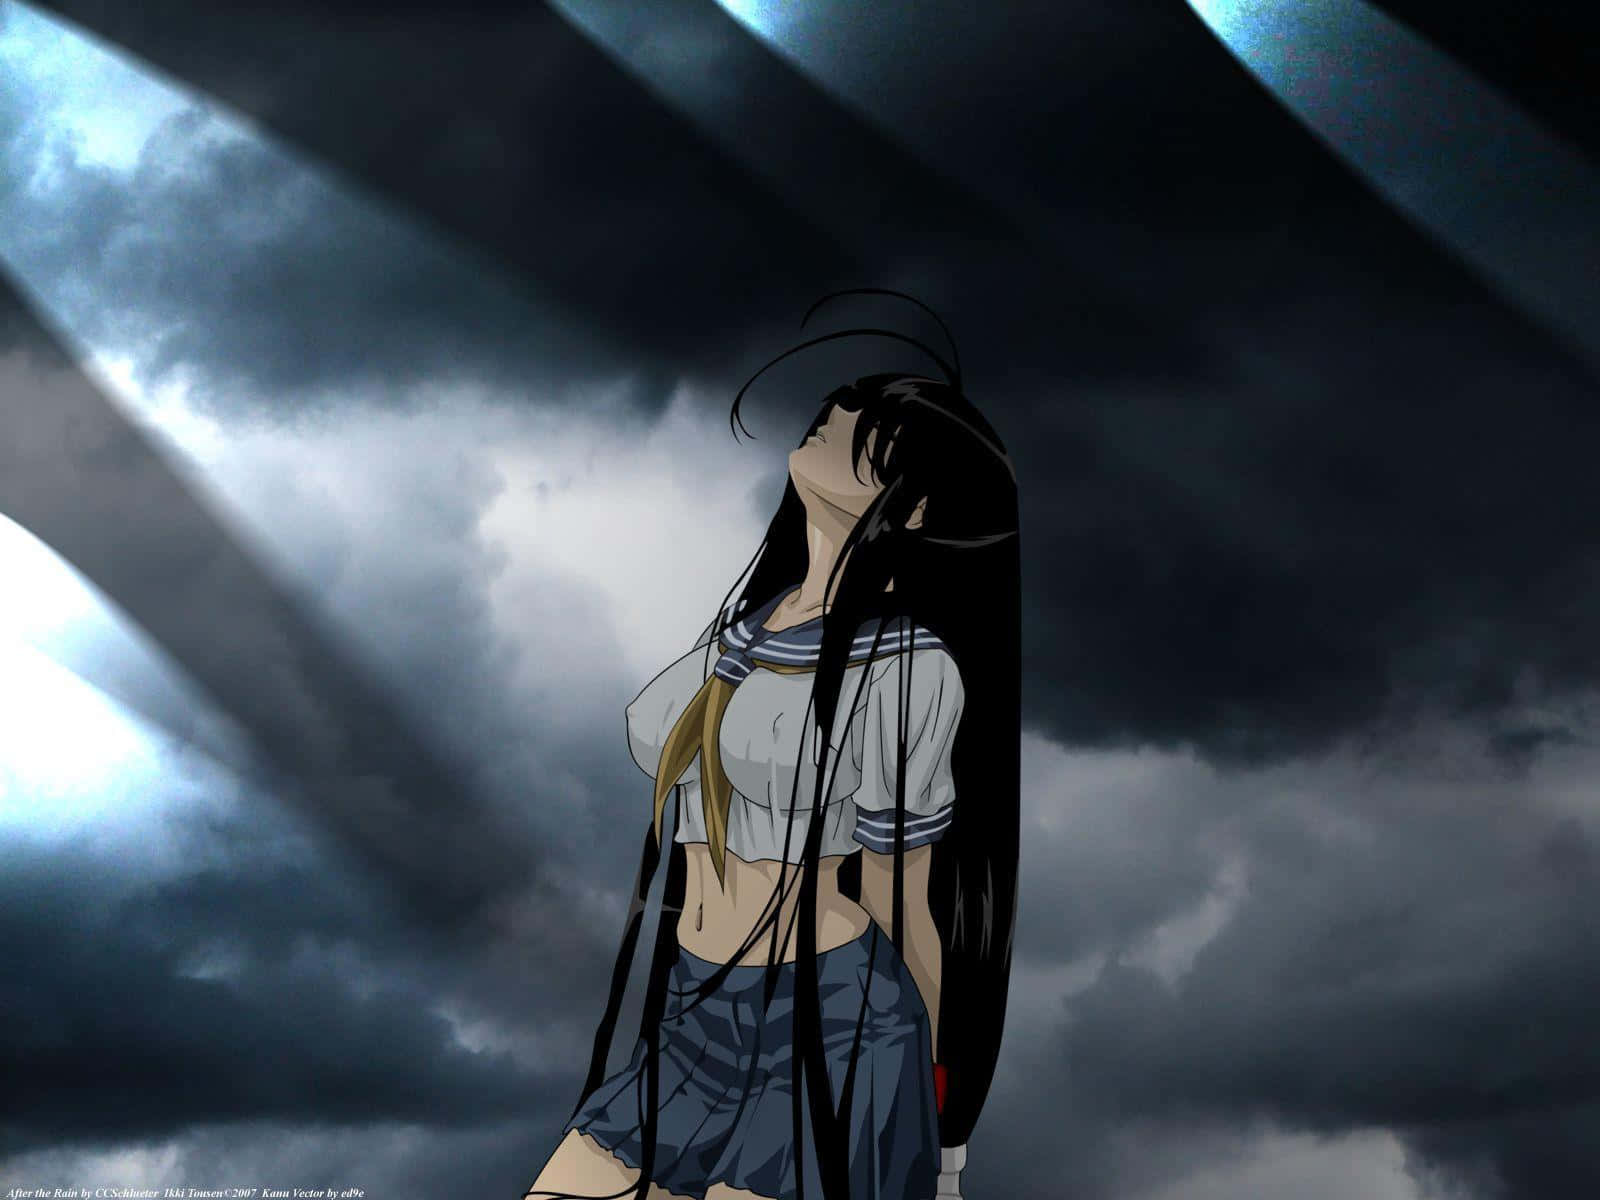 Ryomou Shimei from the Anime Series "Ikki Tousen". Wallpaper